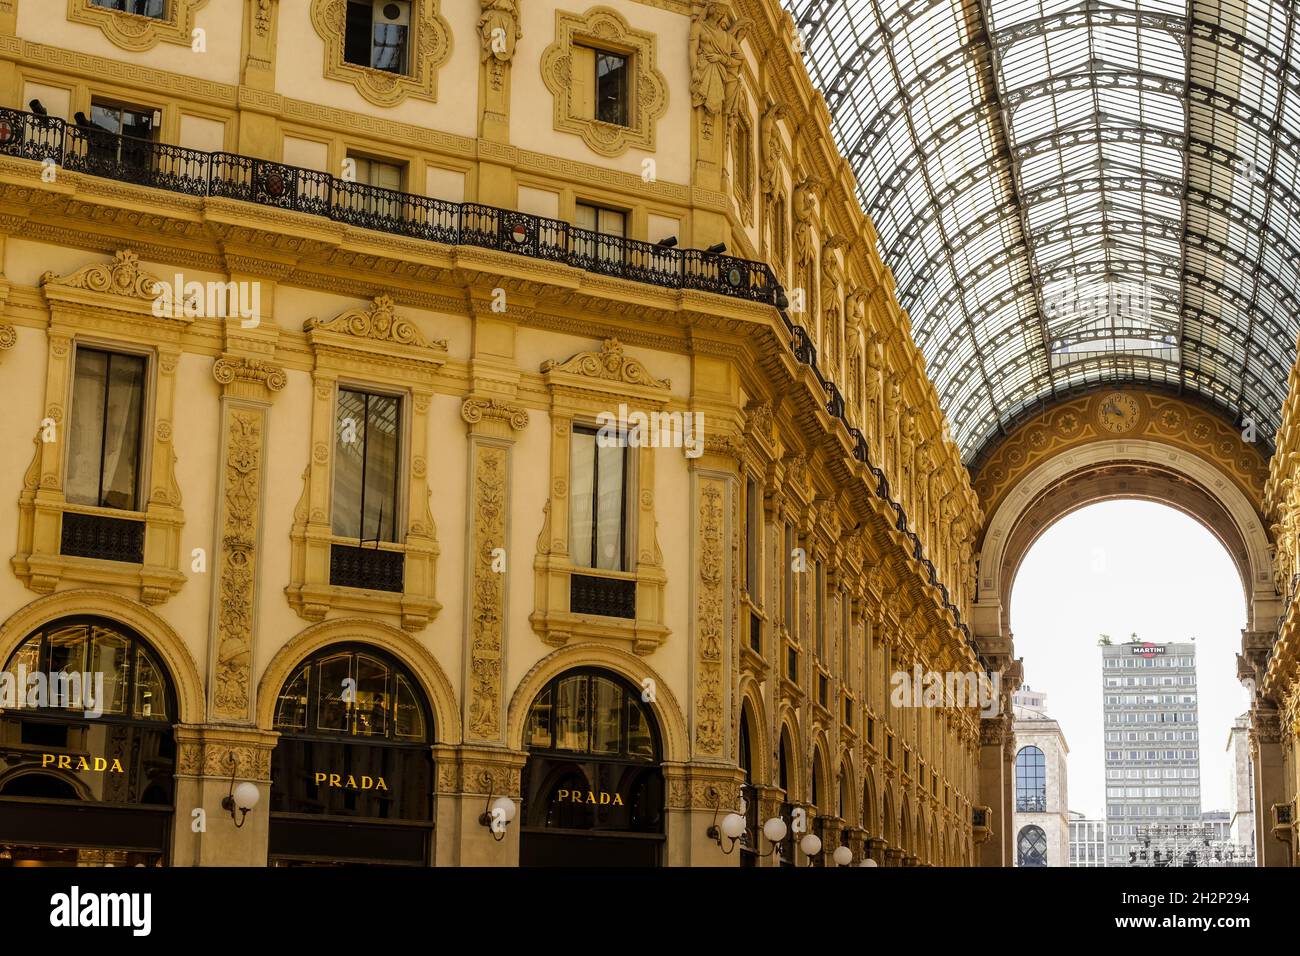 Milano, Italia - 13 giugno 2017: Vista della Galleria Vittorio Emanuele nel centro città Foto Stock